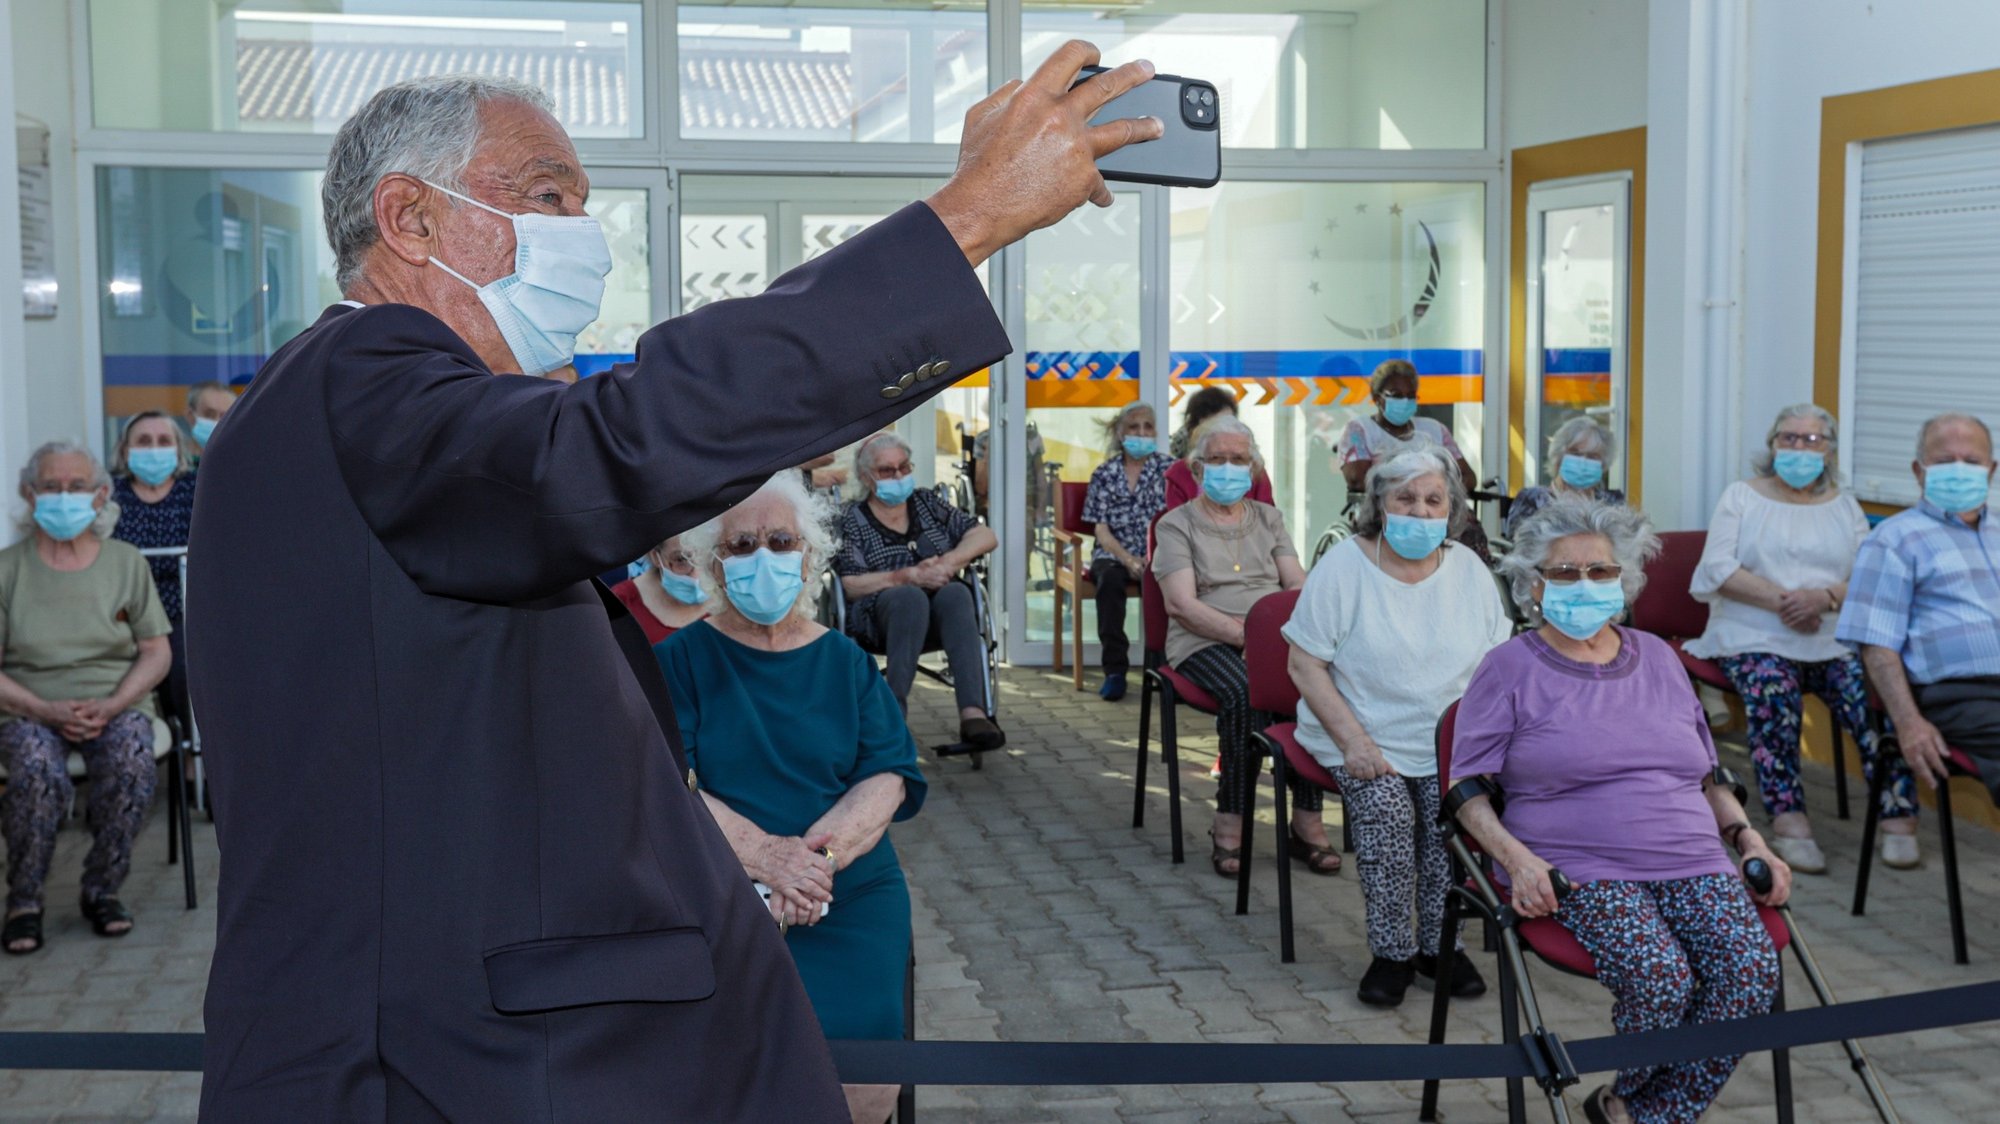 O Presidente da República, Marcelo Rebelo de Sousa, tira uma selfie com utentes durante a visita ao Centro Paroquial, em Martim Longo, Alcoutim, 13 de setembro de 2020. LUÍS FORRA/LUSA